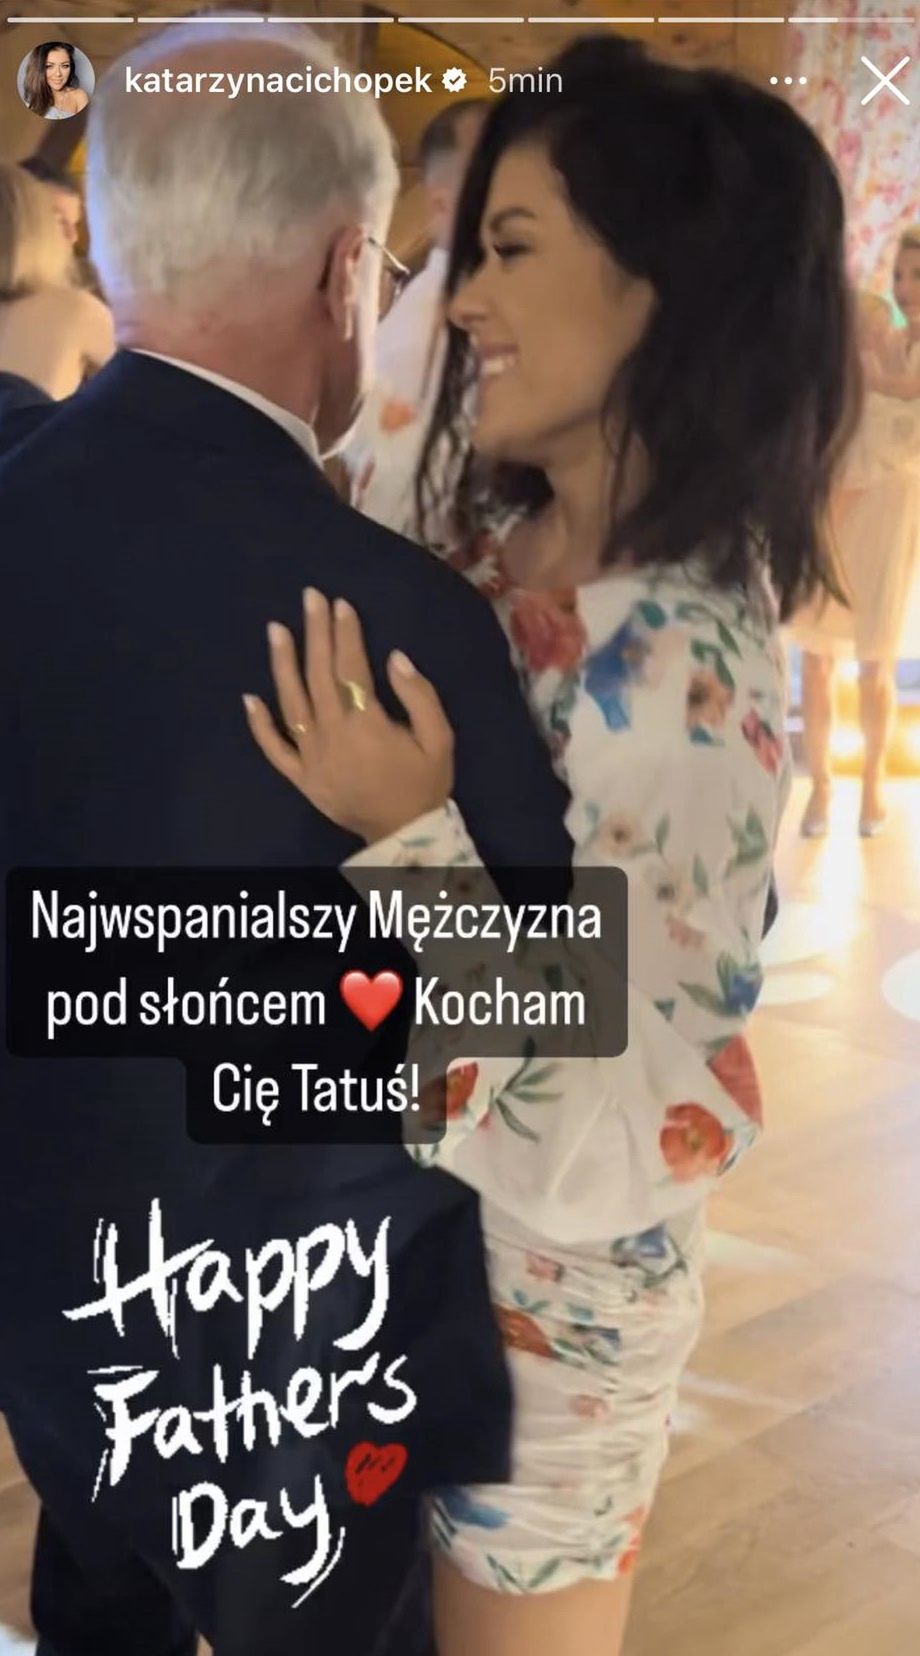 Katarzyna Cichopek pochwaliła się tatą